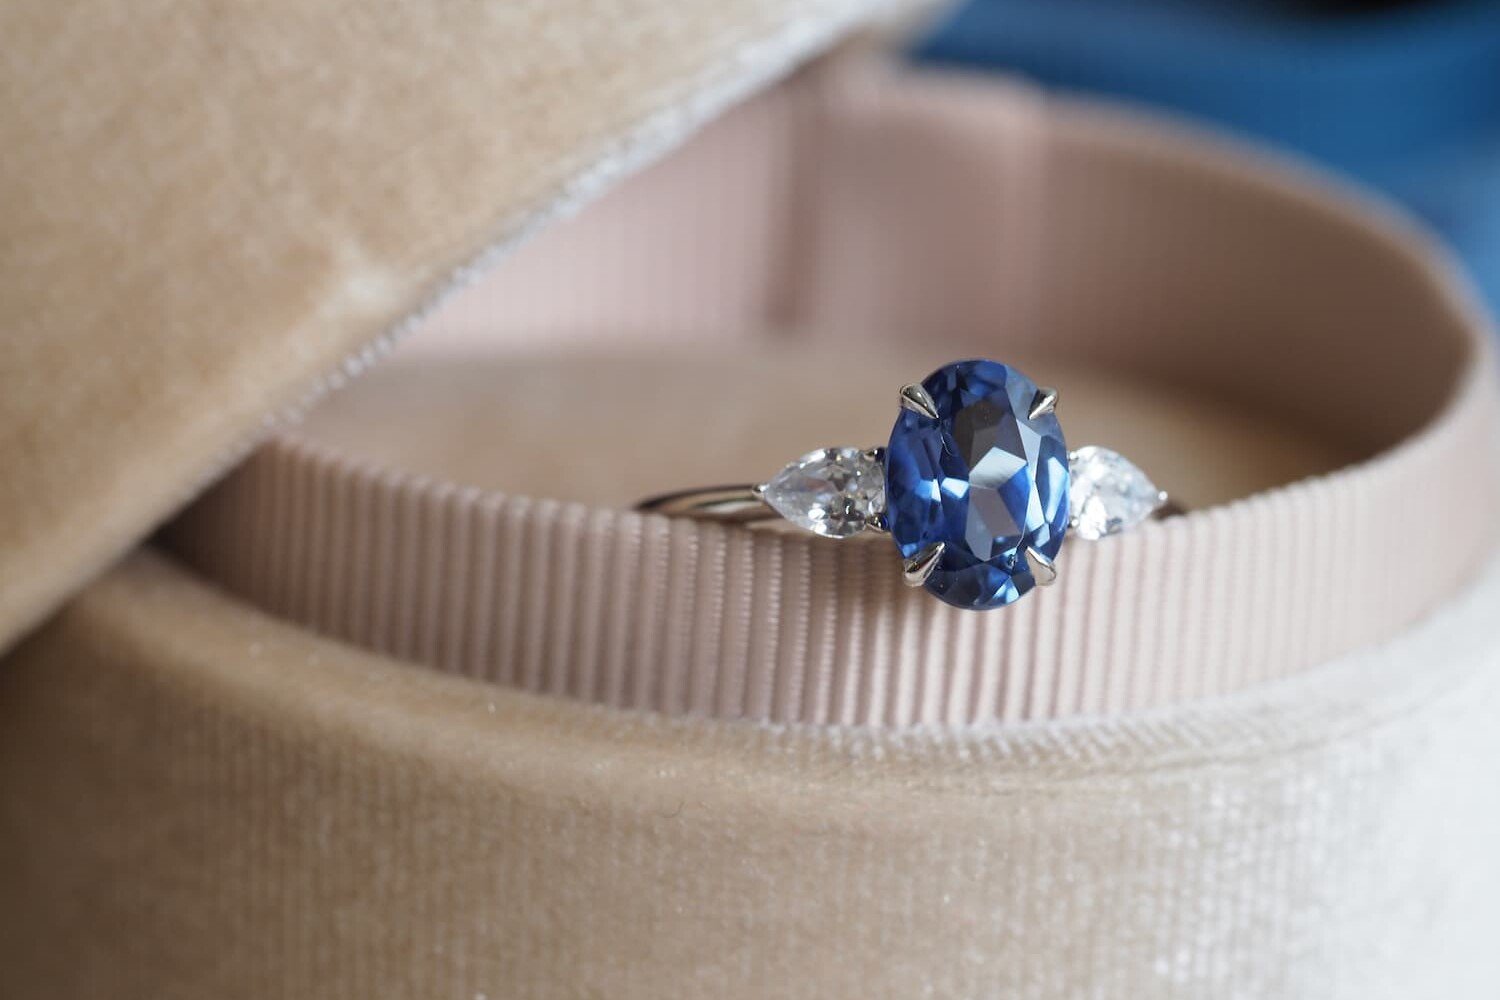 Oval blue sapphire ring kept in velvet bix